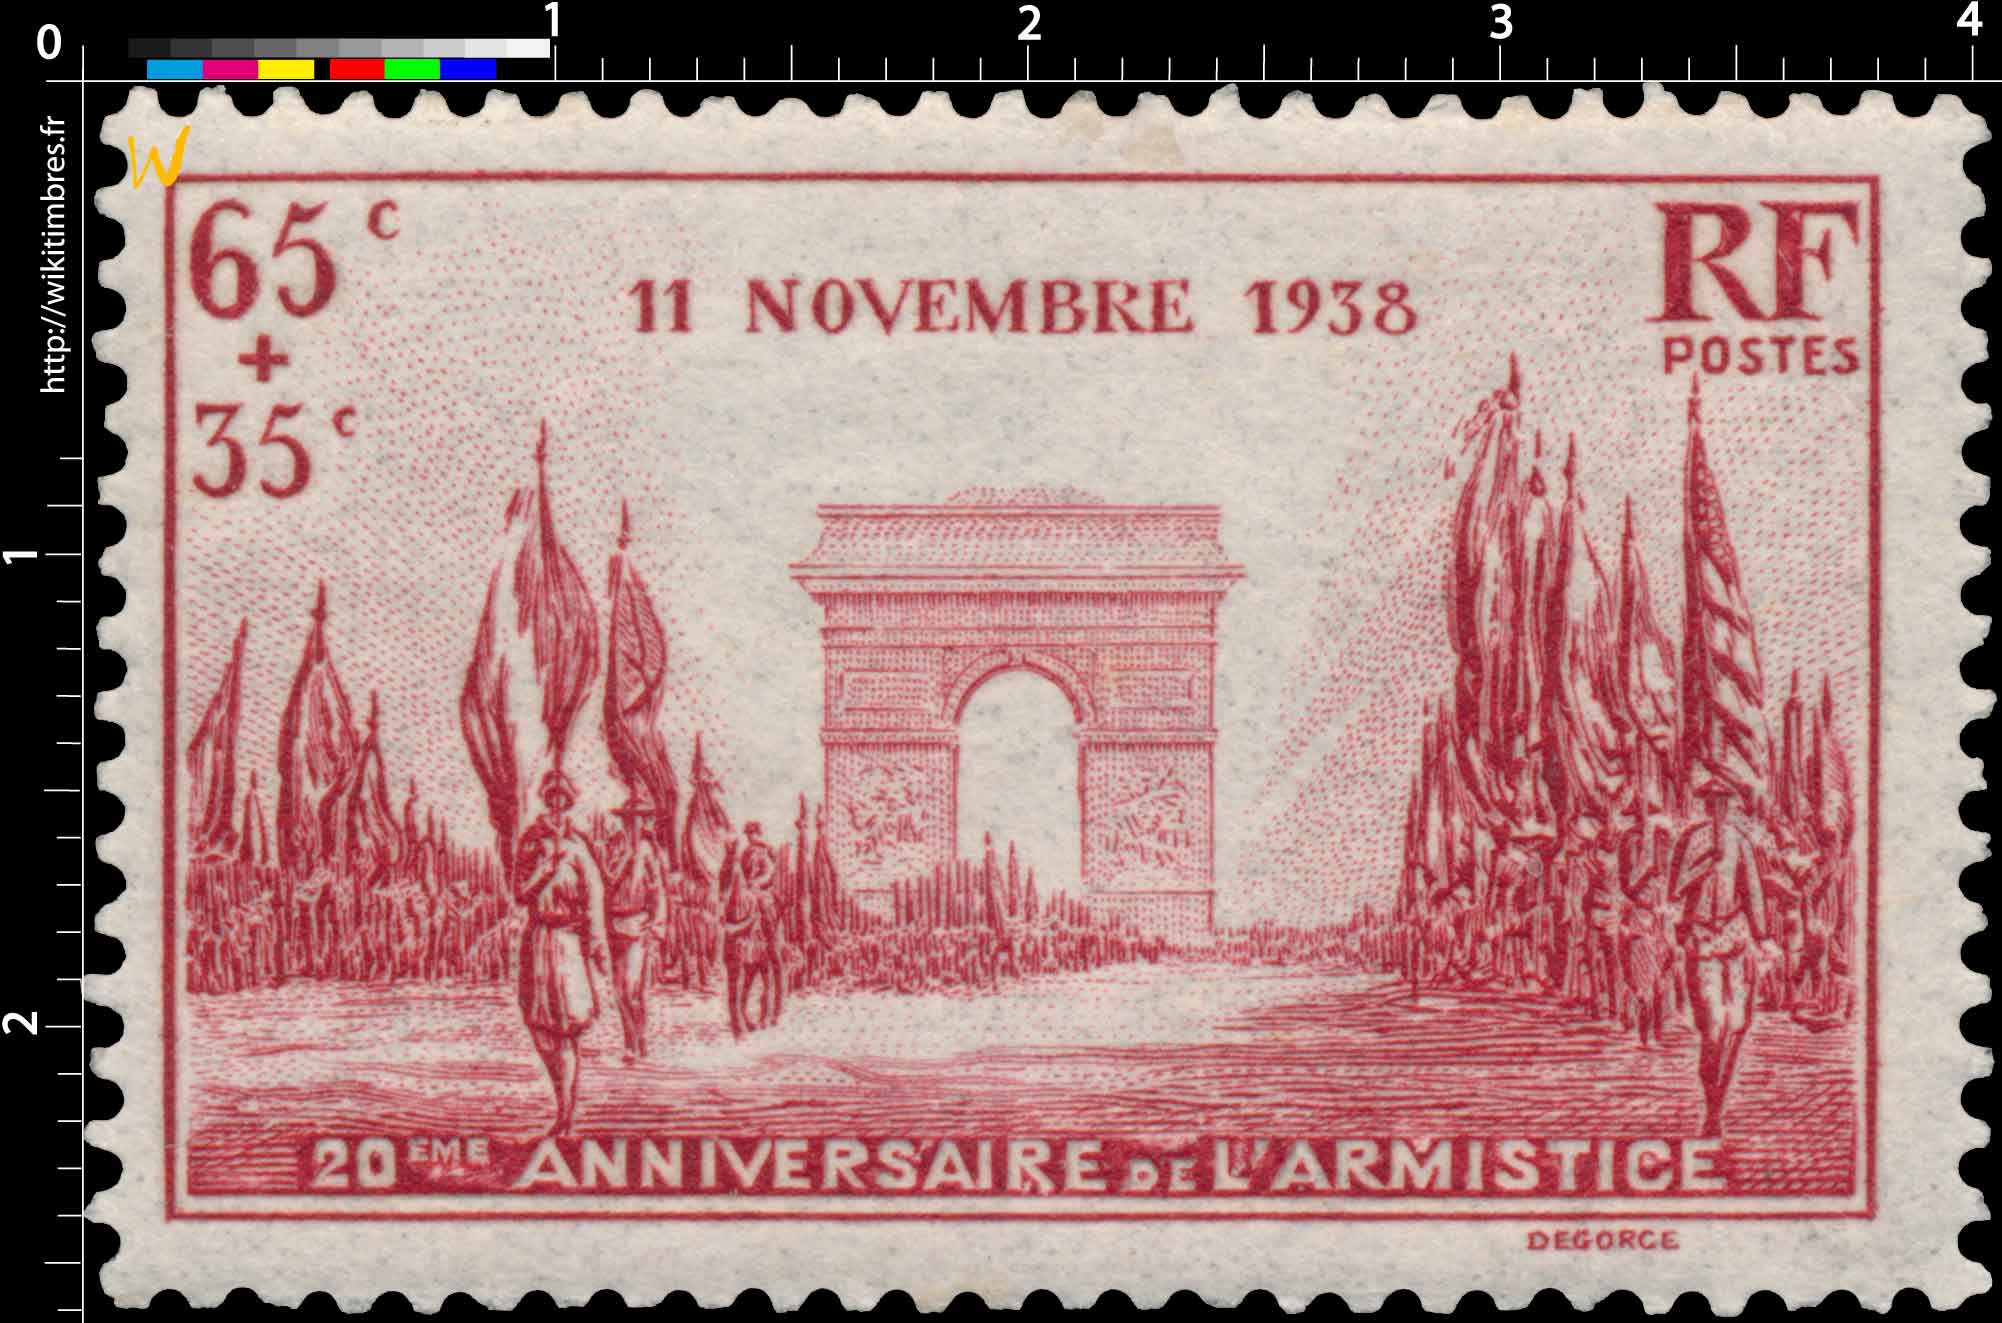 11 NOVEMBRE 1938 20ÈME ANNIVERSAIRE DE L'ARMISTICE